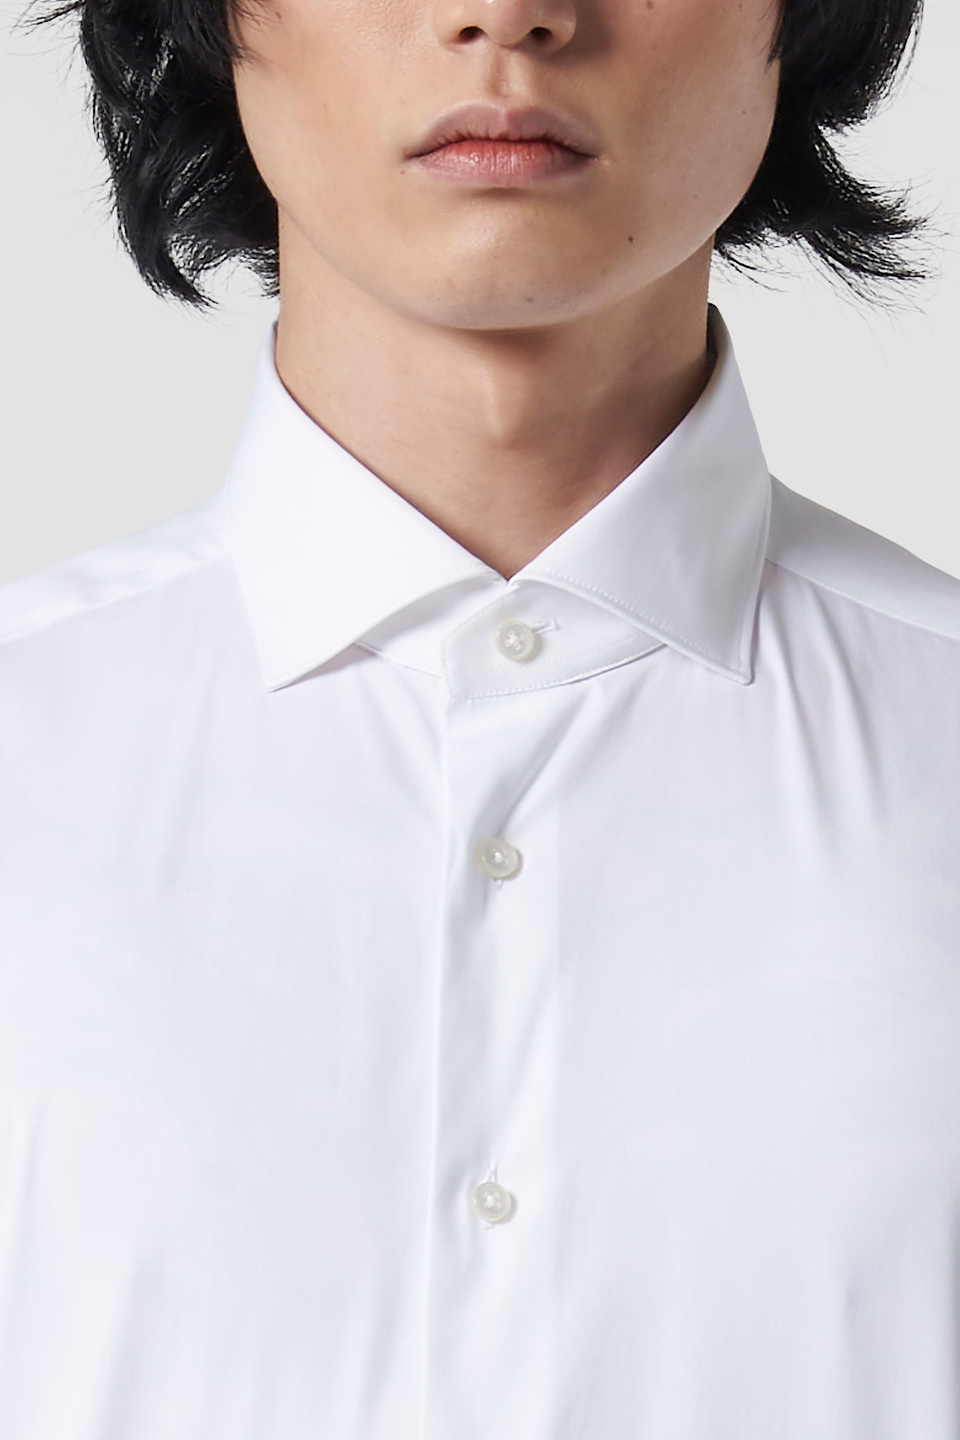 Plain-coloured cotton shirt | La Martina - Official Online Shop